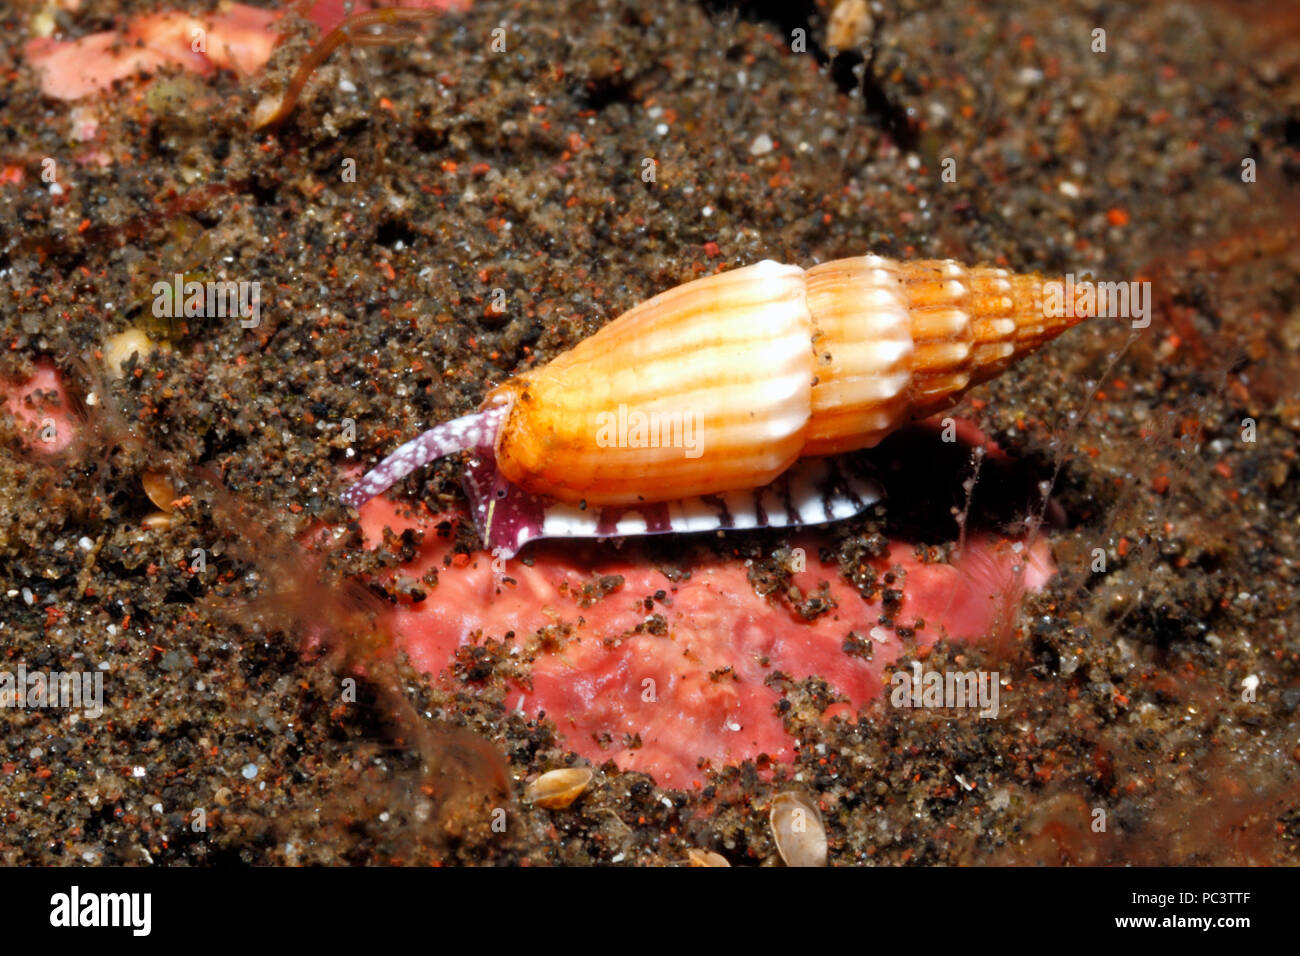 Mitre nervuré, Vexillum turriger Shell. Vivant sous l'eau, montrant le pied, syphon et eye.Tulamben, Bali, Indonésie. La mer de Bali, de l'Océan Indien Banque D'Images